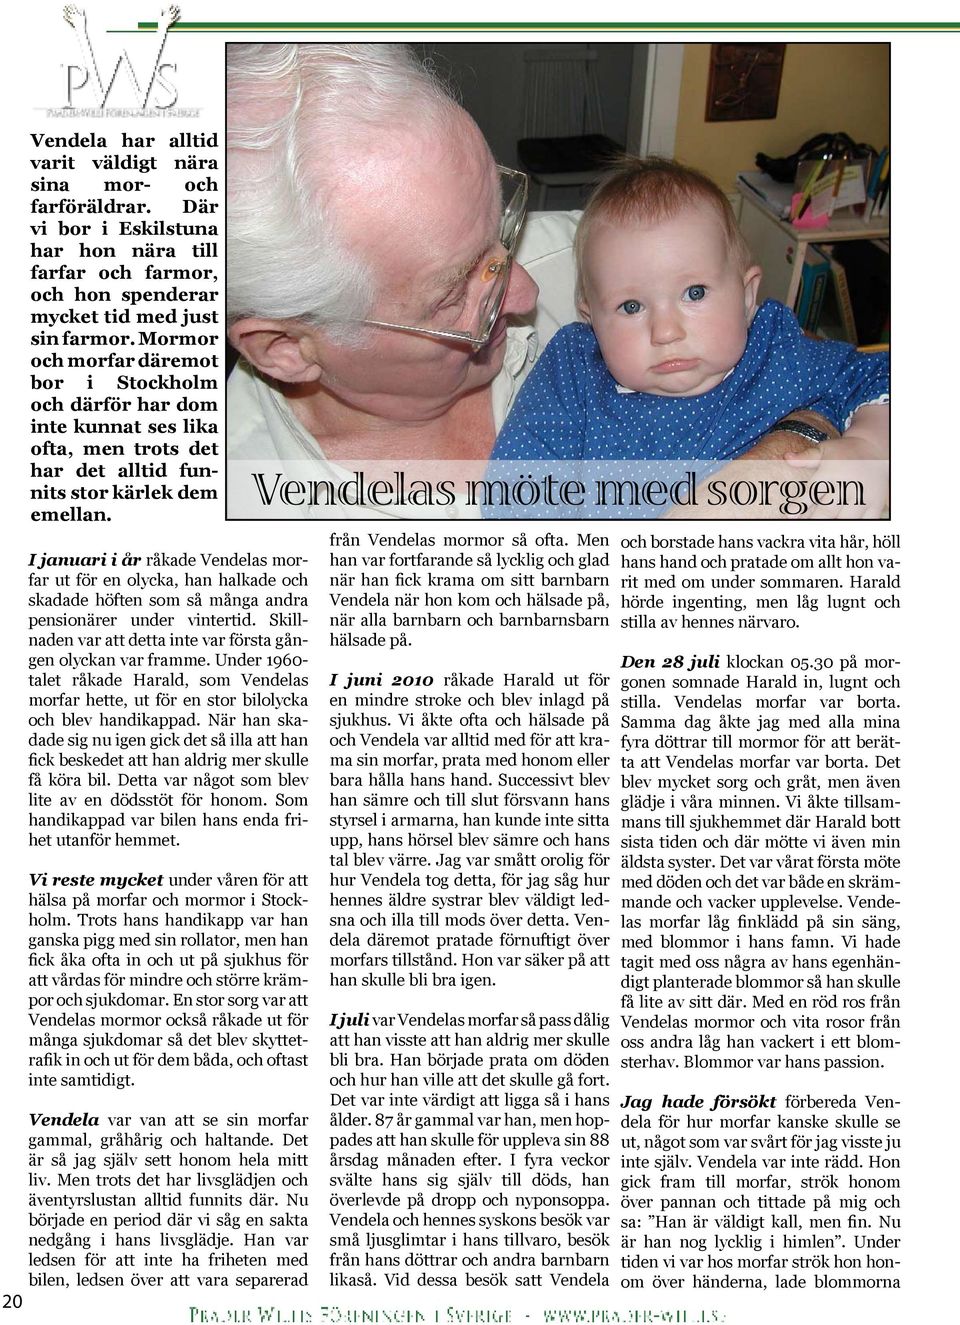 I januari i år råkade Vendelas morfar ut för en olycka, han halkade och skadade höften som så många andra pensionärer under vintertid.